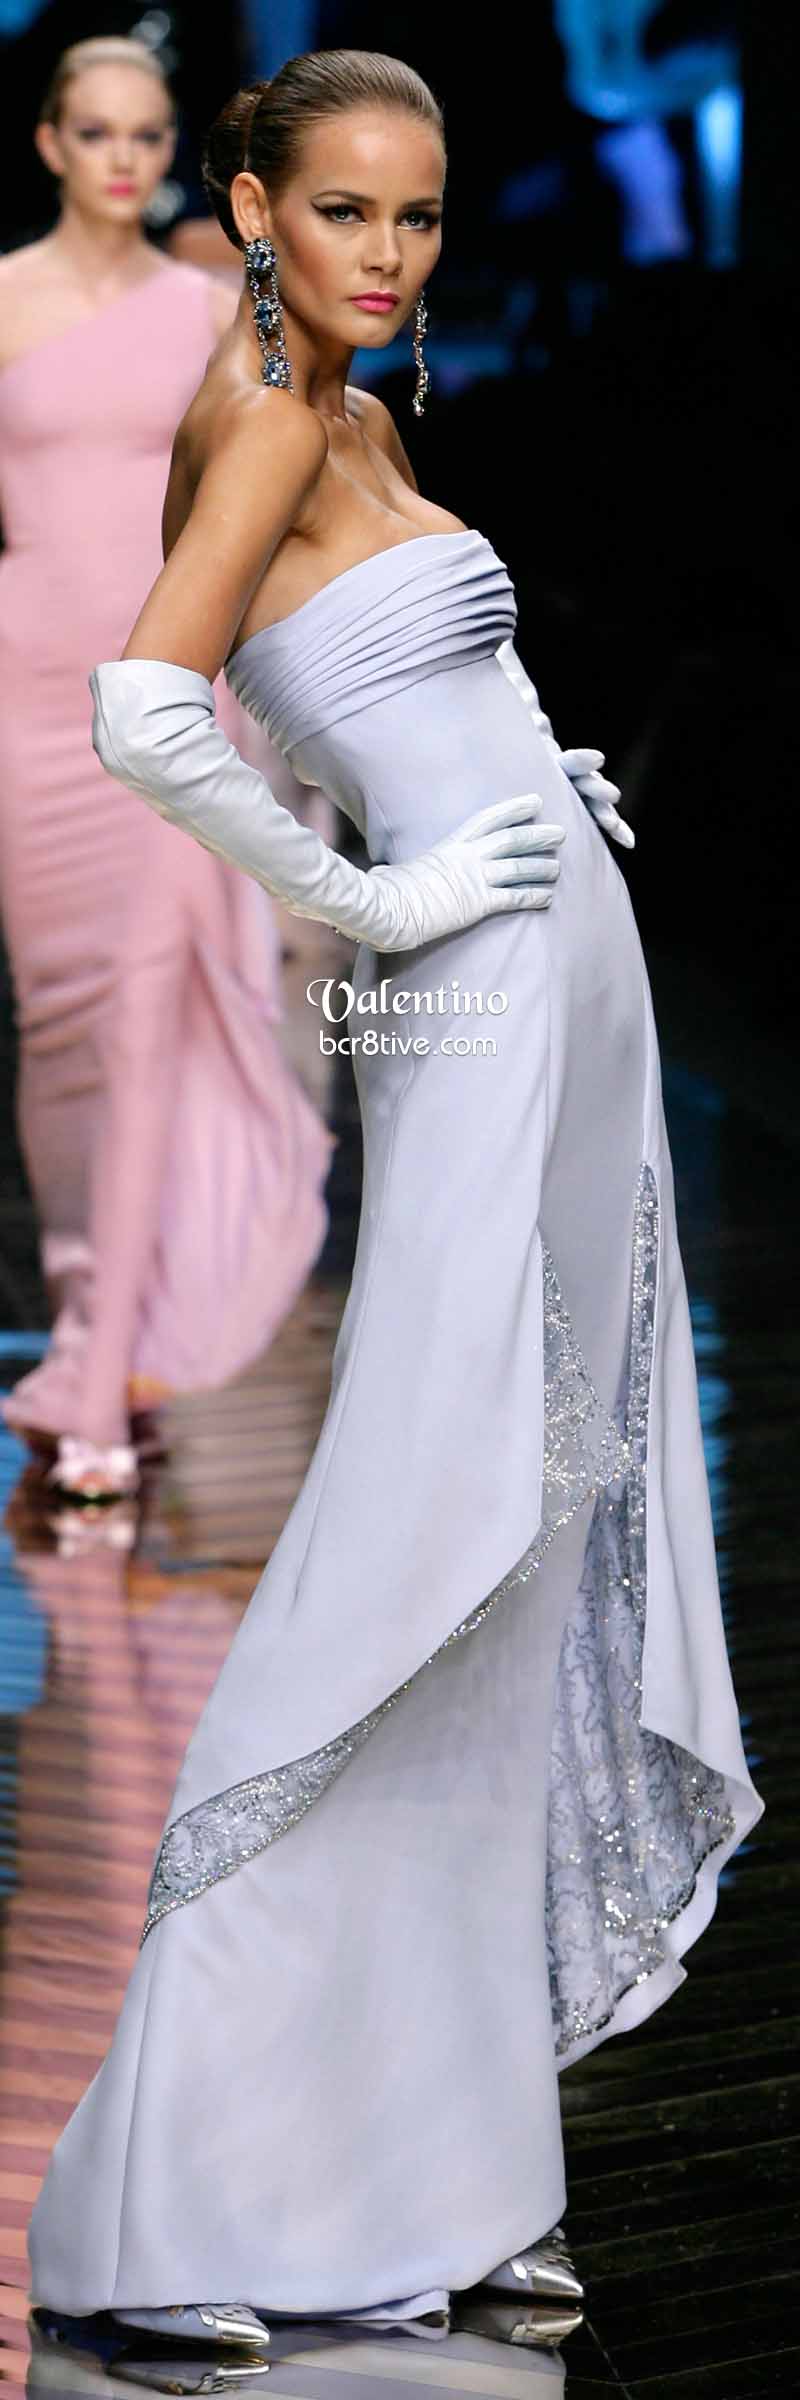 Valentino Chic Powder Blue Evening Gown